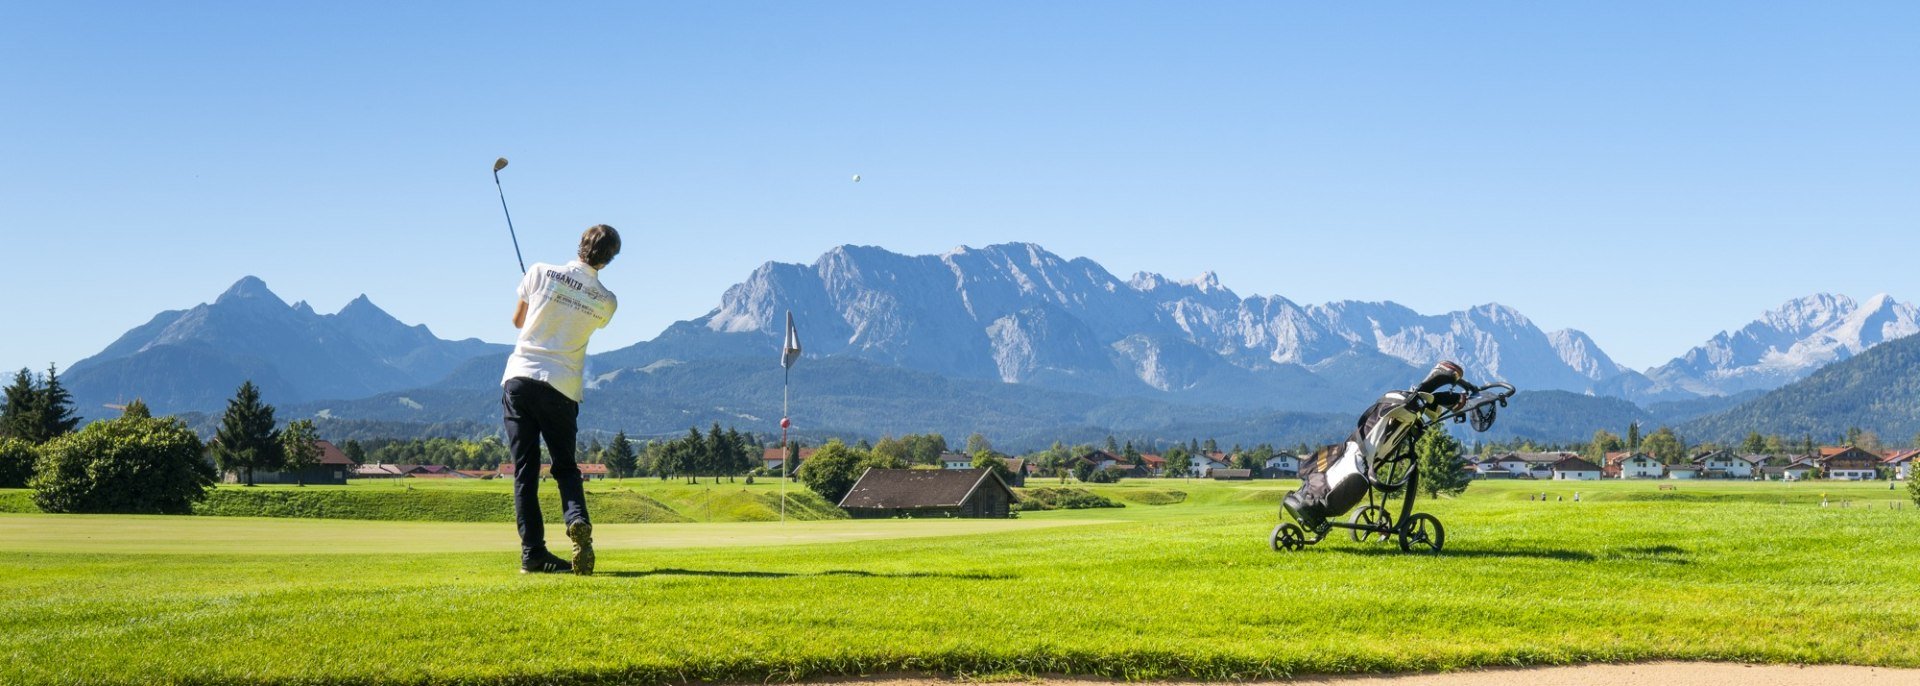 Der Golf- und Landclub Karwendel in Wallgau bietet einen 9-Loch Platz mit 19-Loch Variante eingebettet zwischen Zugspitze, Karwendel und Walchensee, © Alpenwelt Karwendel | Paul Wolf